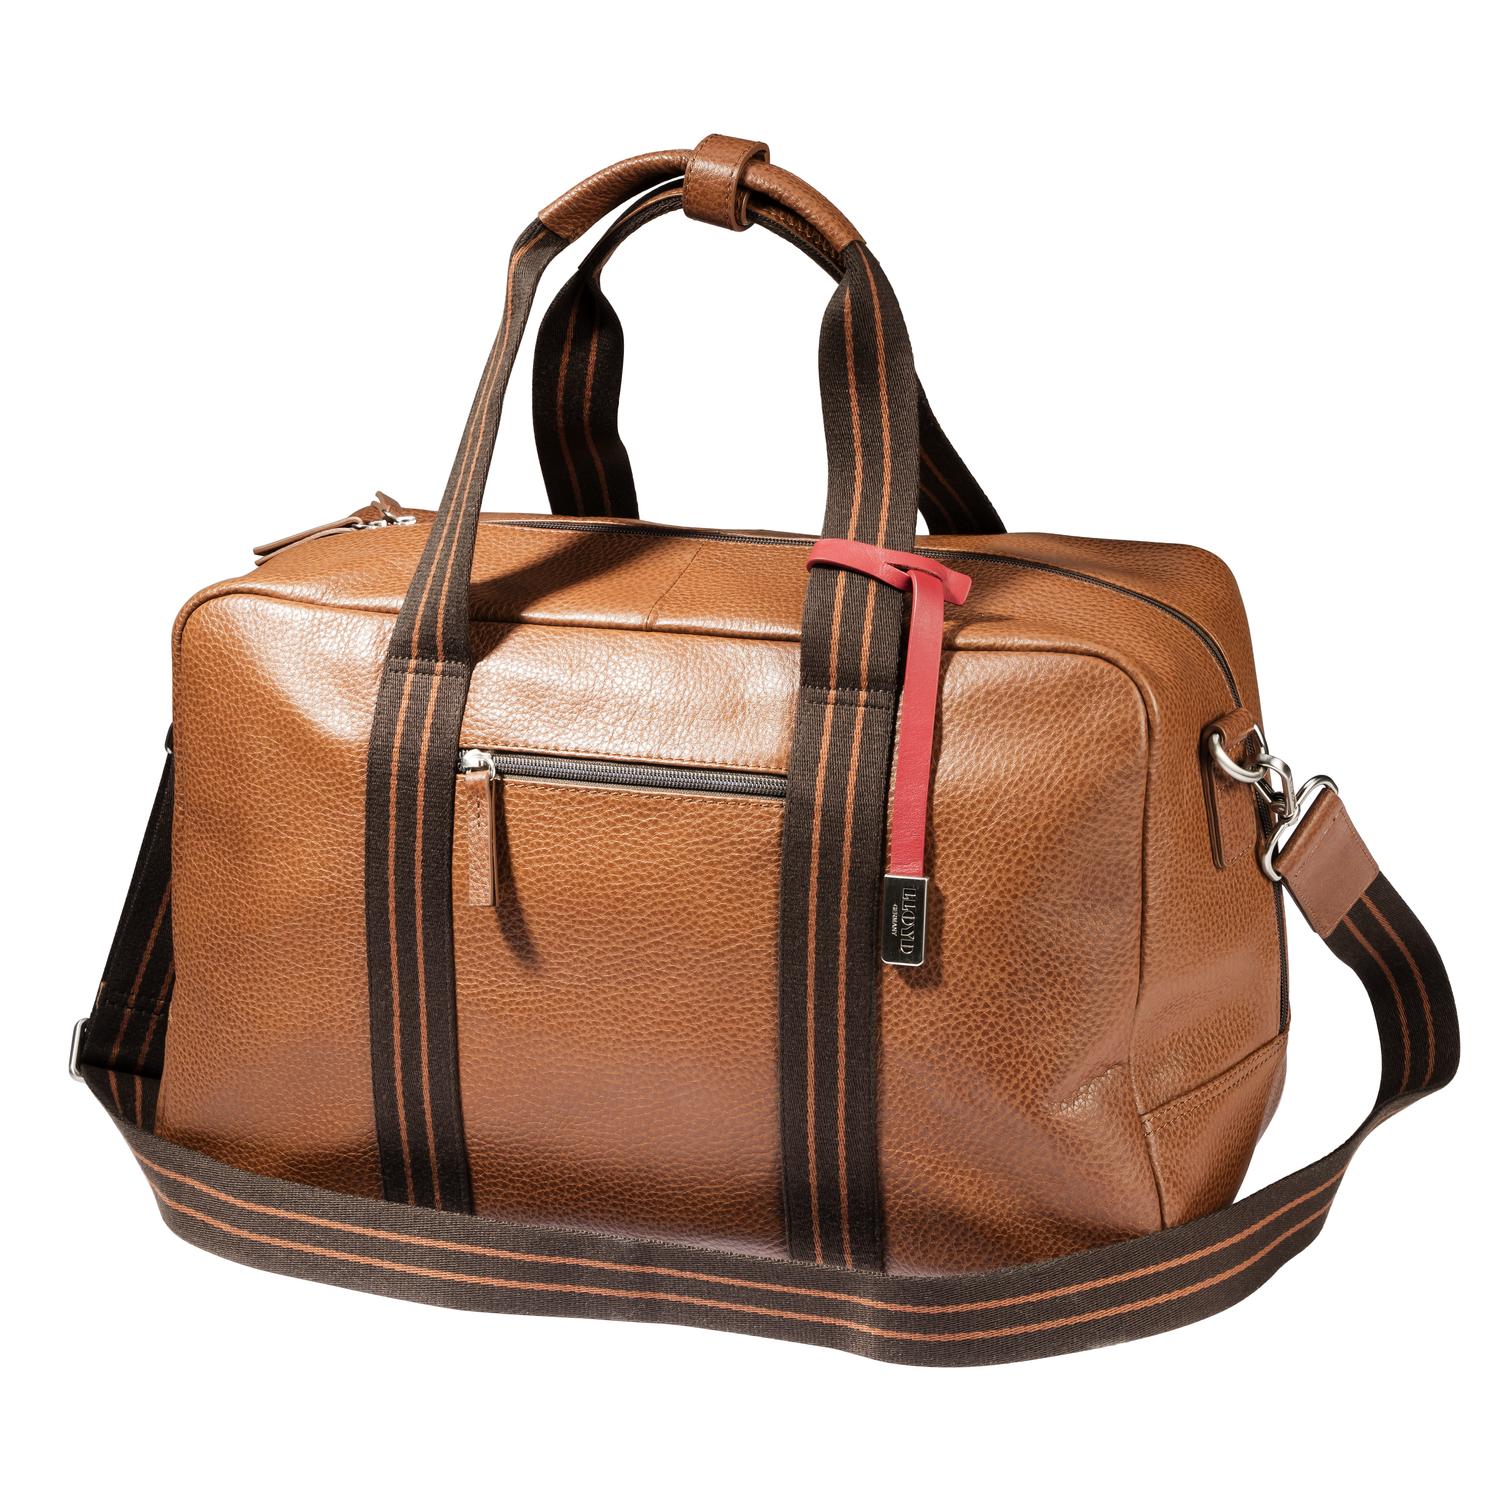 Lloyd Baker Black Genuine Leather Shoulder Bag / Grab Bag Handbag | eBay